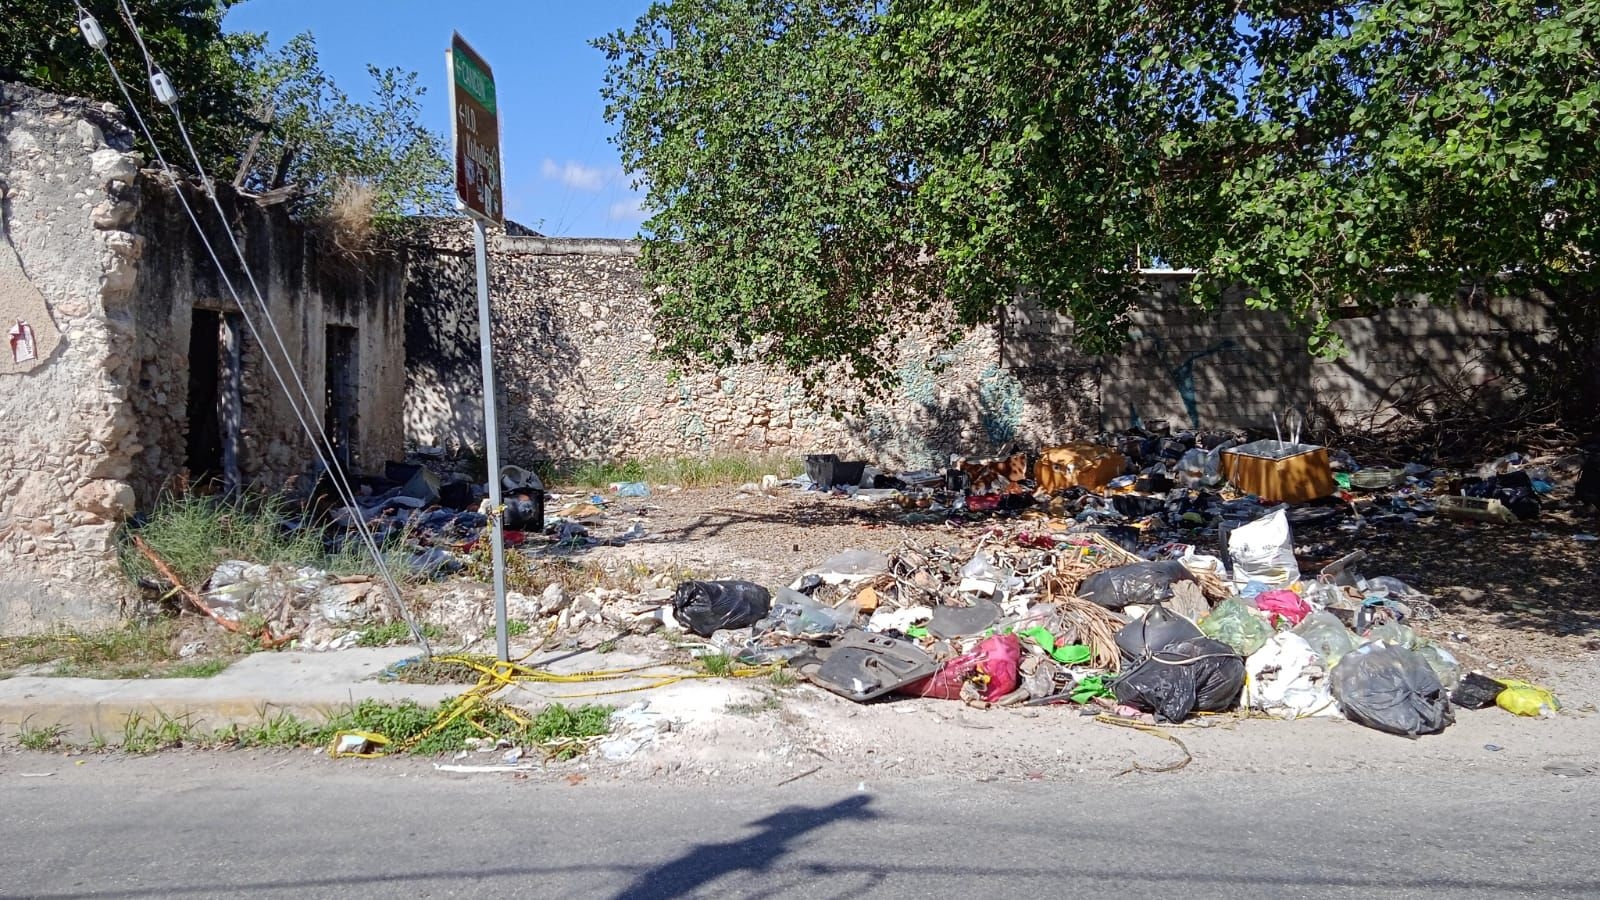 Vecinos denuncian 'tiradero' en predio abandonado del Centro de Mérida